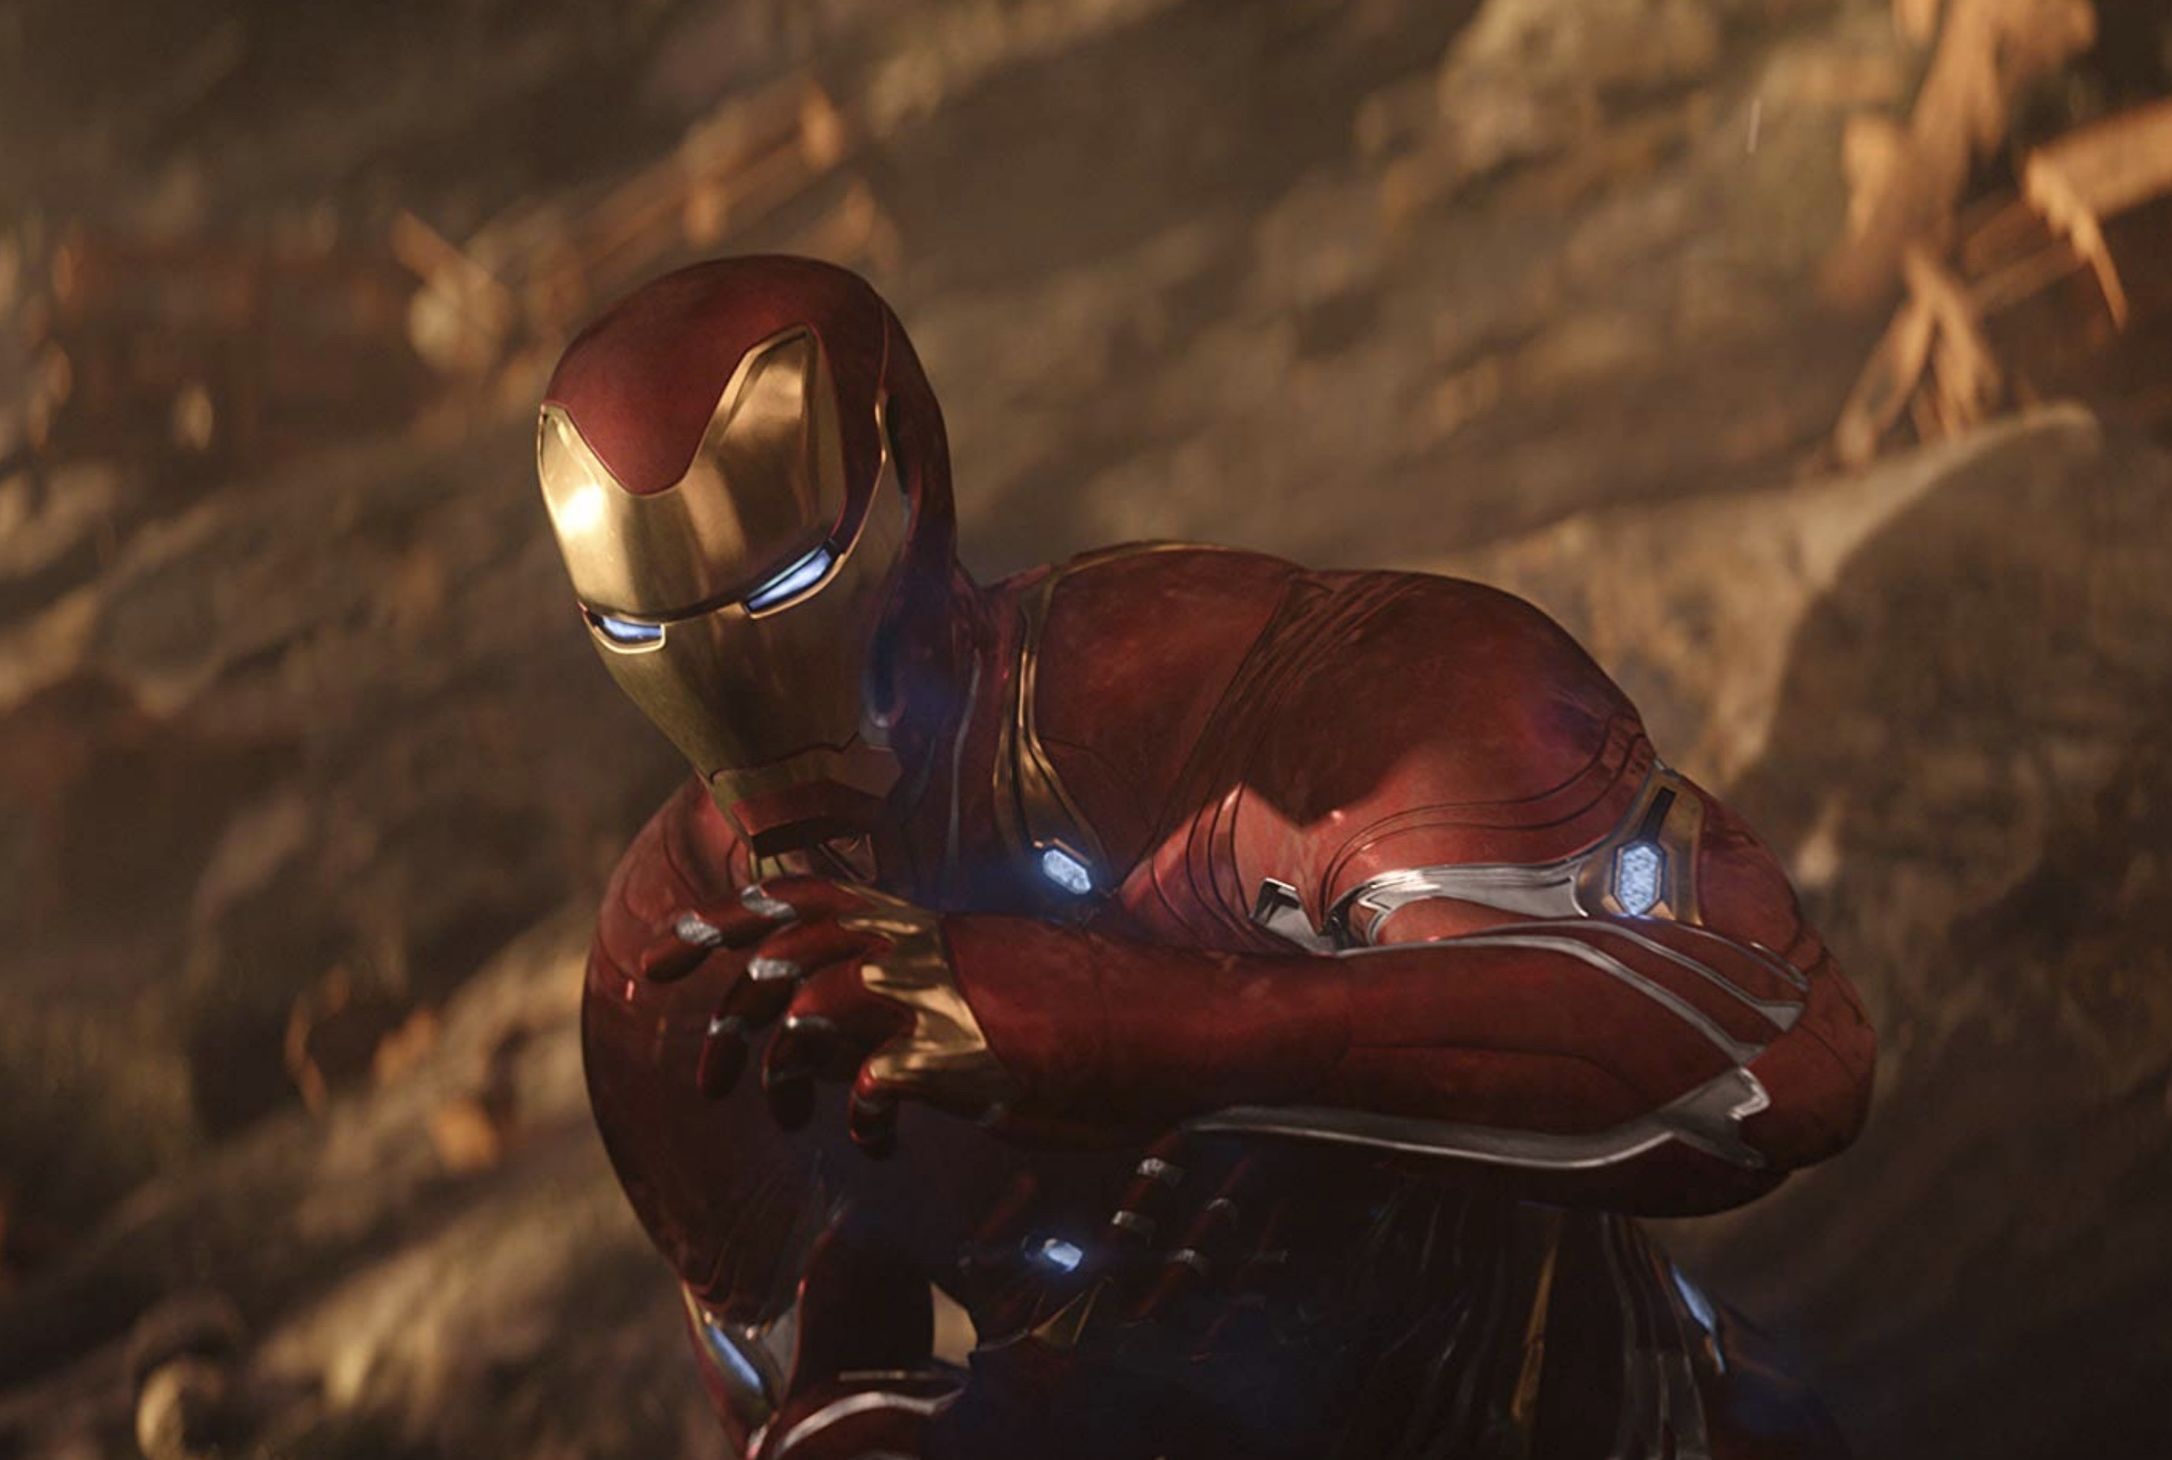 Leaked Avengers: Endgame Photo May Have Revealed Iron Man's Mark 85 Suit